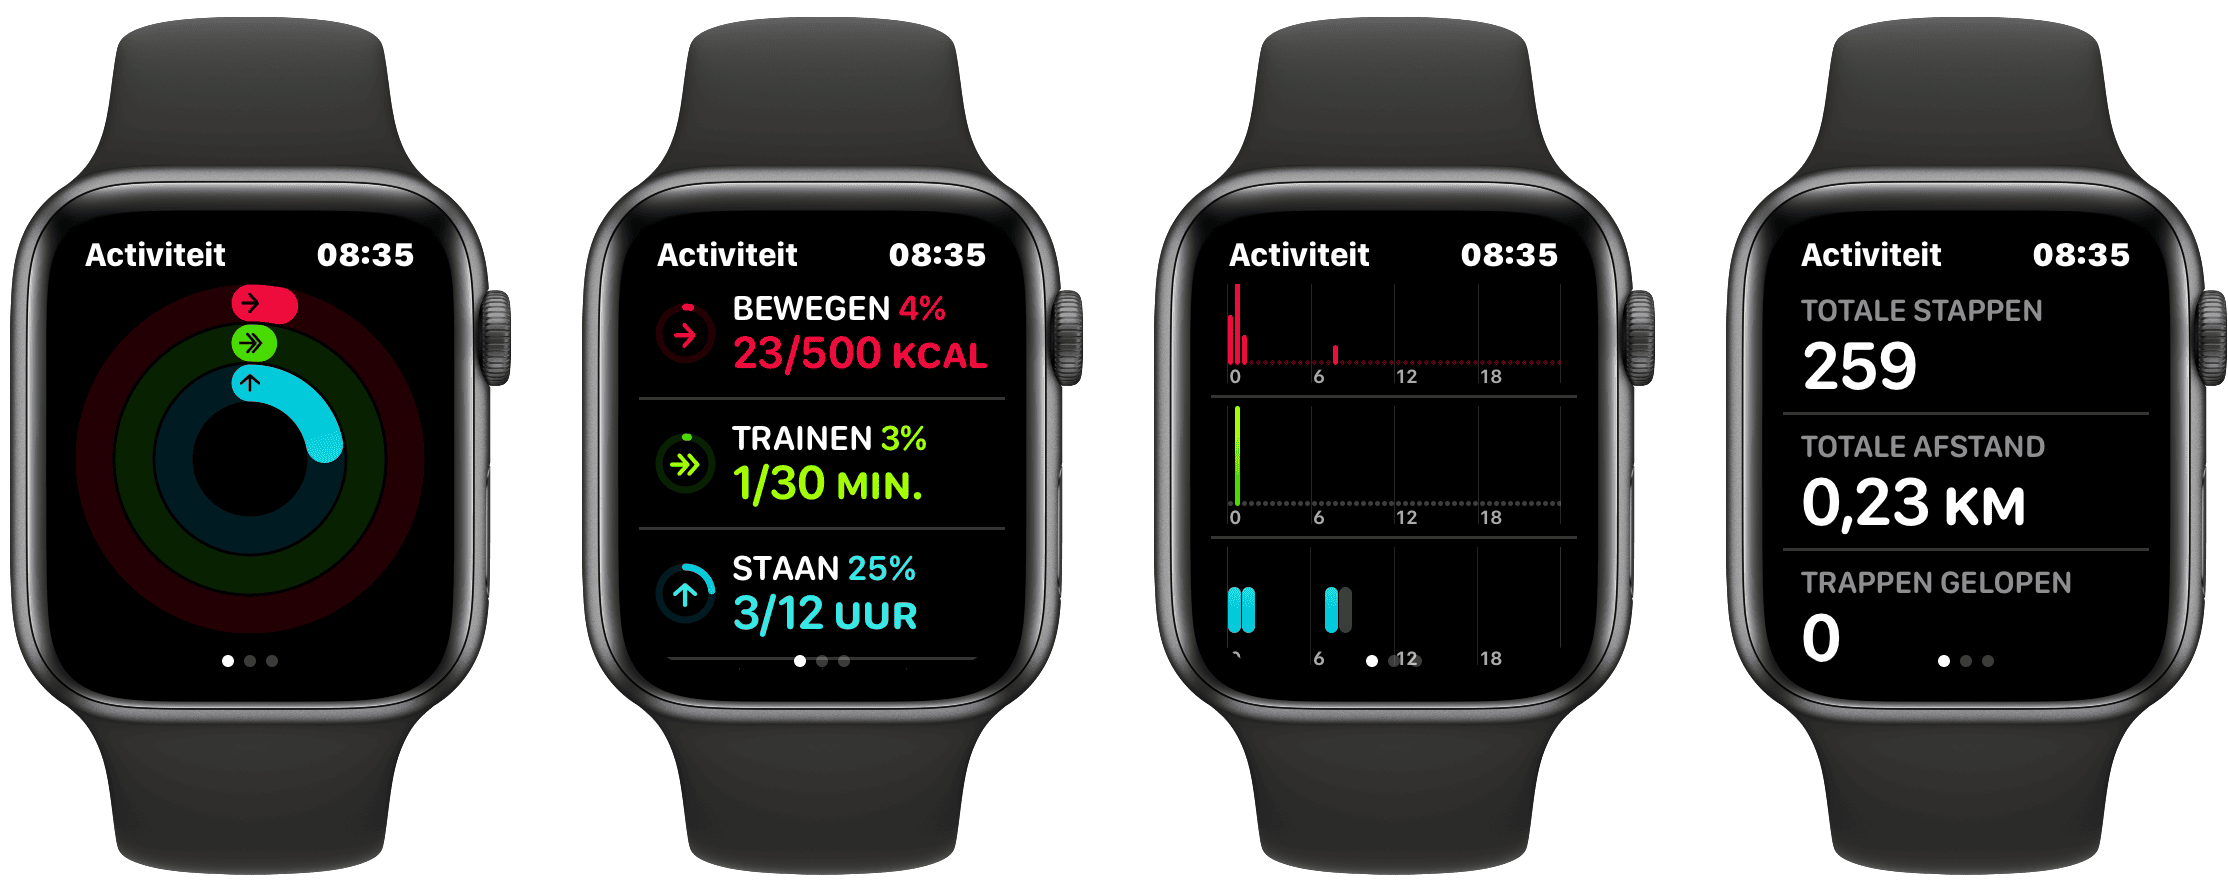 Activiteit-app op de Apple Watch